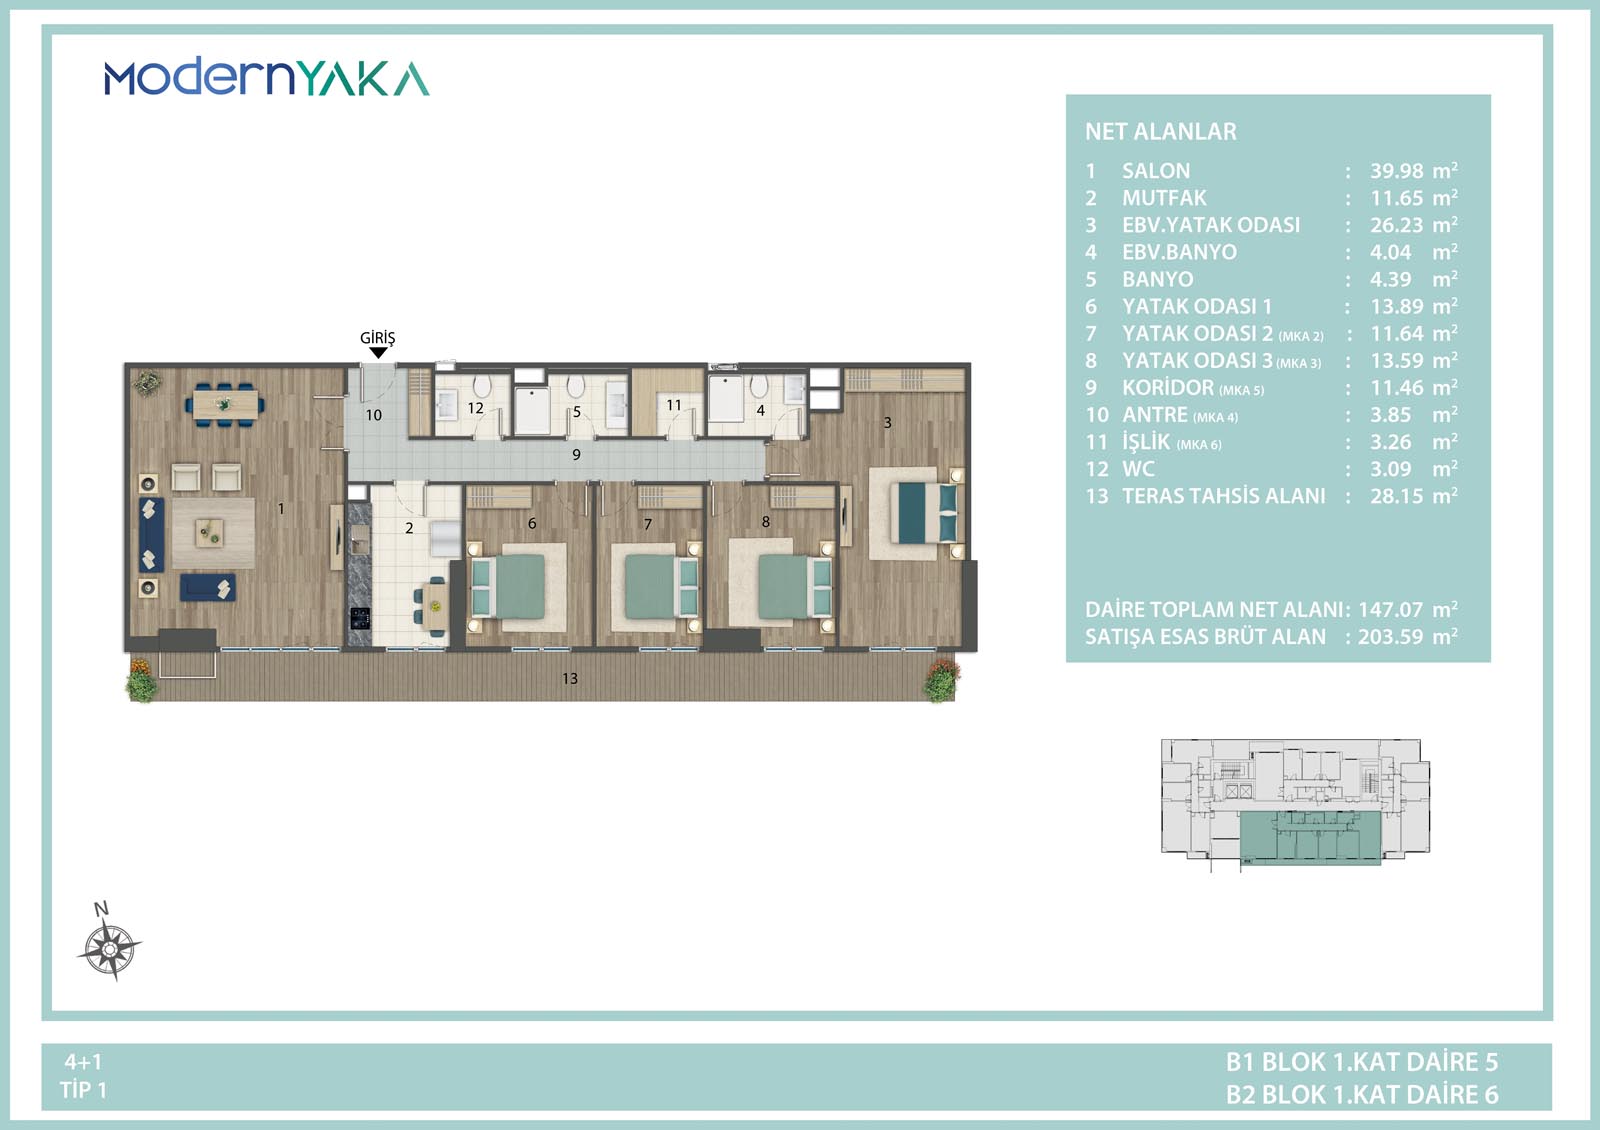 4-комнатная квартира в Авджылар | ModernYaka Ispartakule